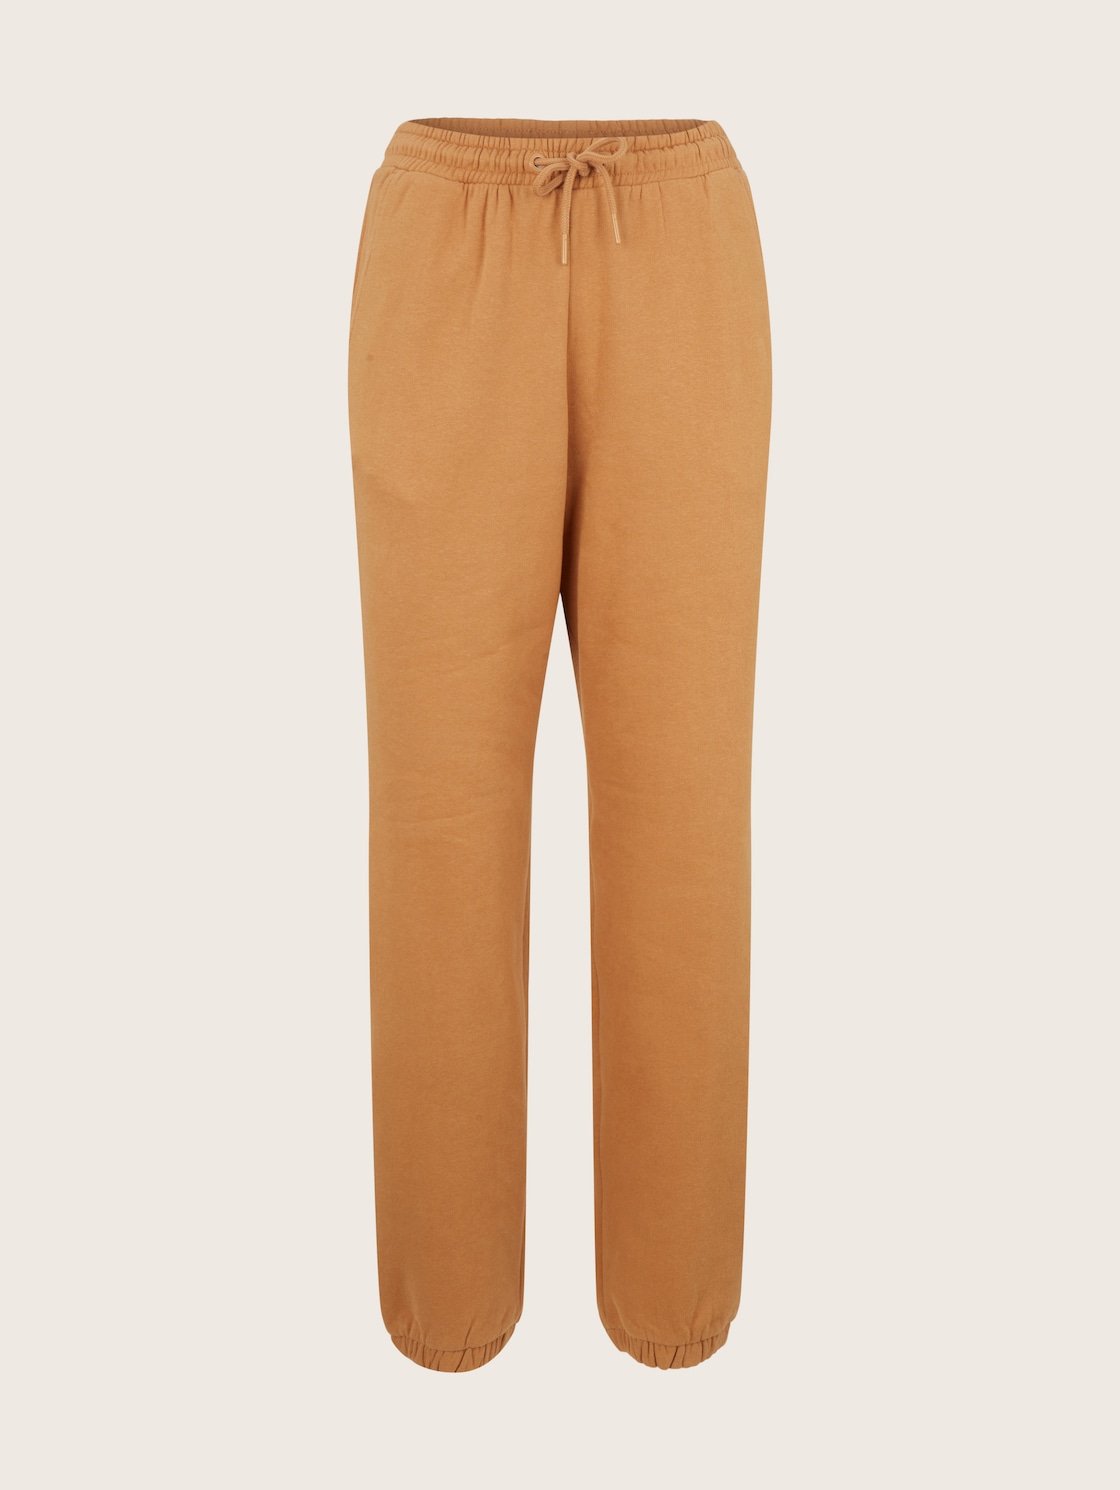 Спортивные брюки женские Tom Tailor Denim 1034512 коричневые XS